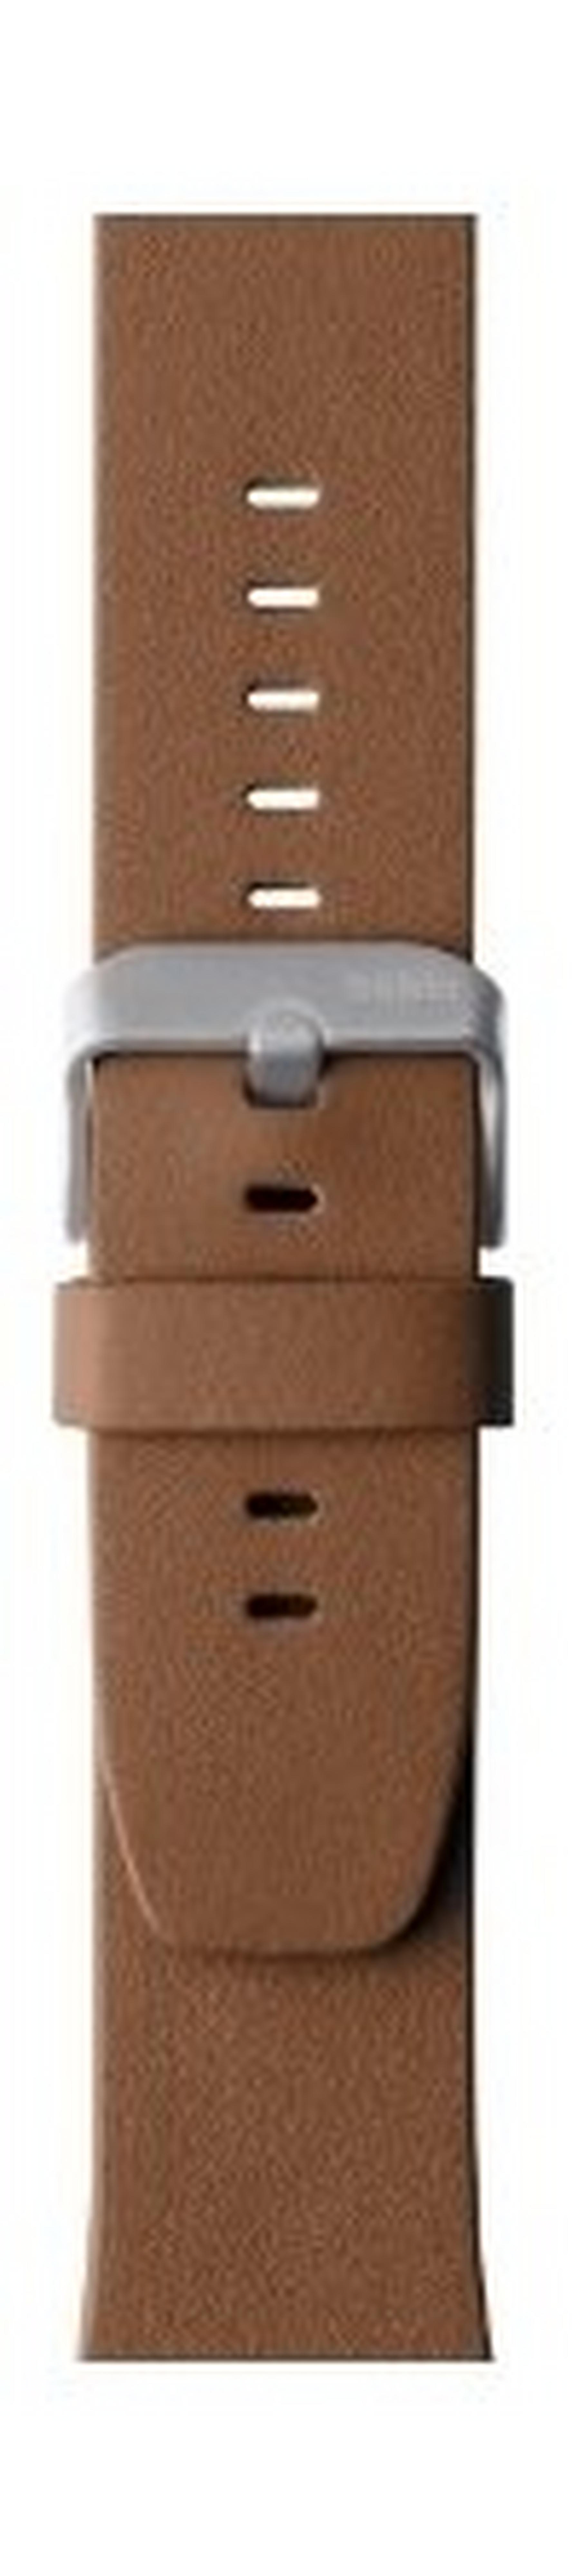 حزام كلاسيكي من الجلد لساعة أبل ٤٢ ملم من بيلكين - بني (F8W732BTC01)